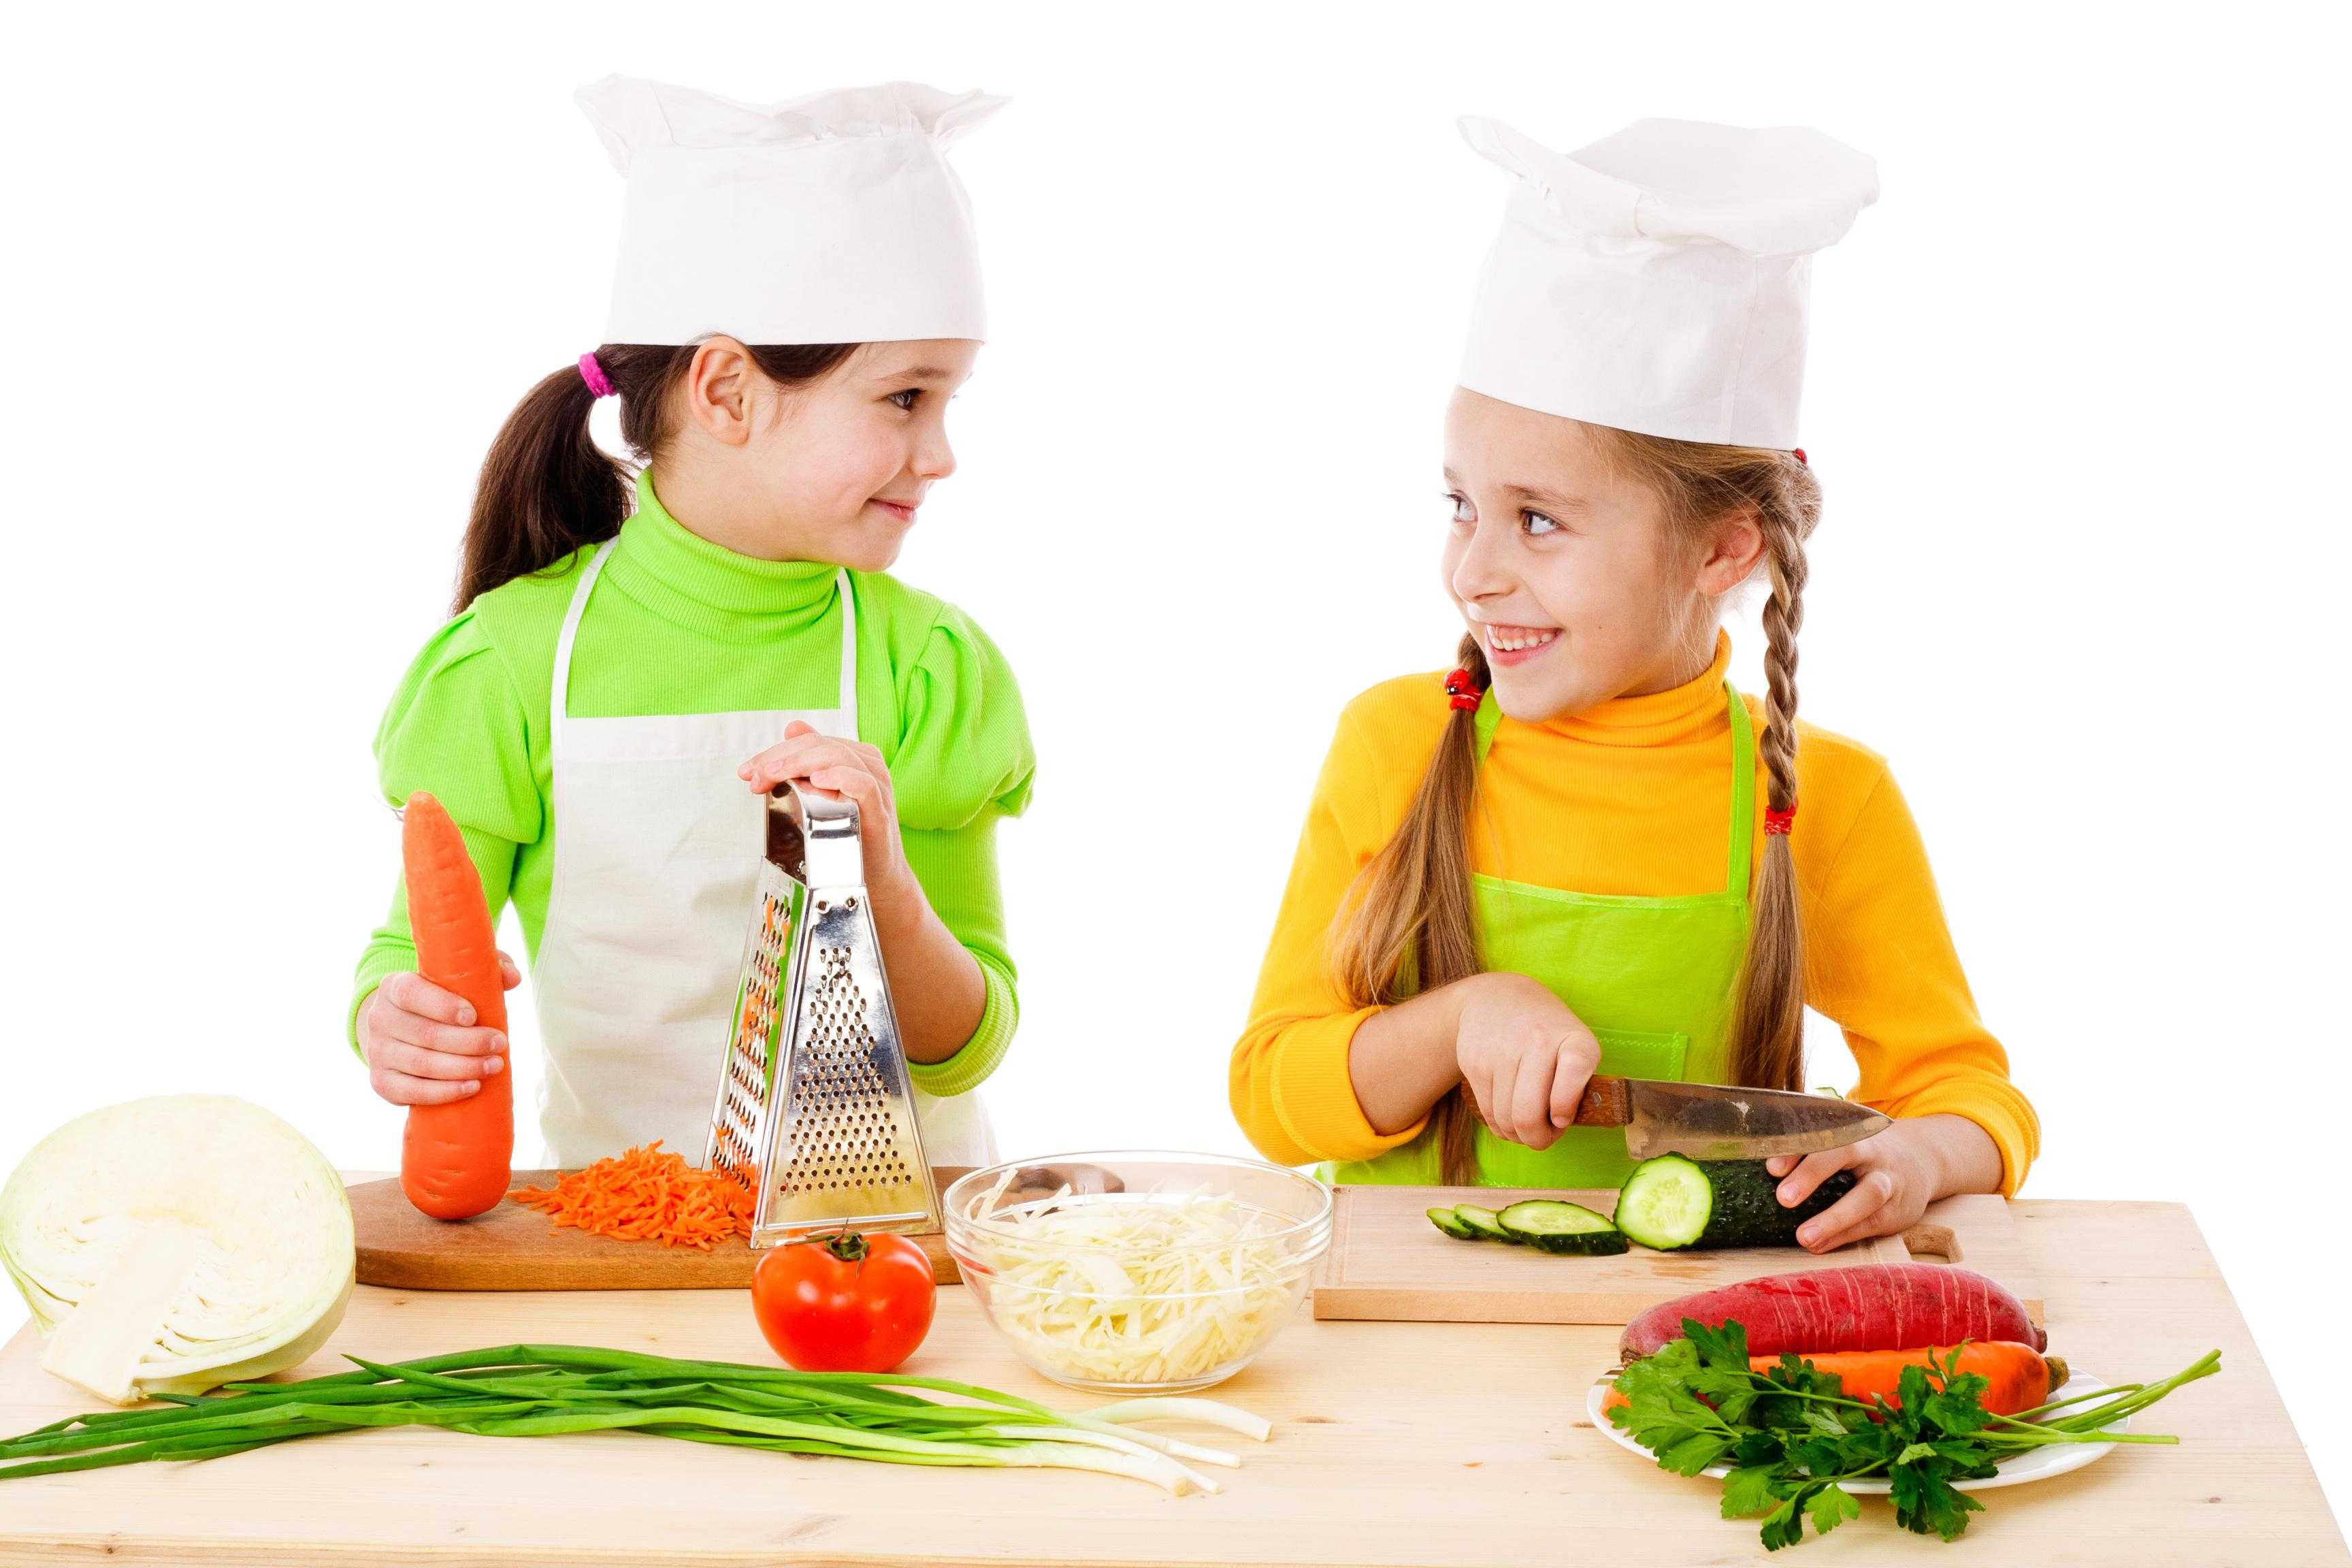 Топ 15 кулинарных онлайн-курсов, которые научат вкусно готовить - все курсы онлайн